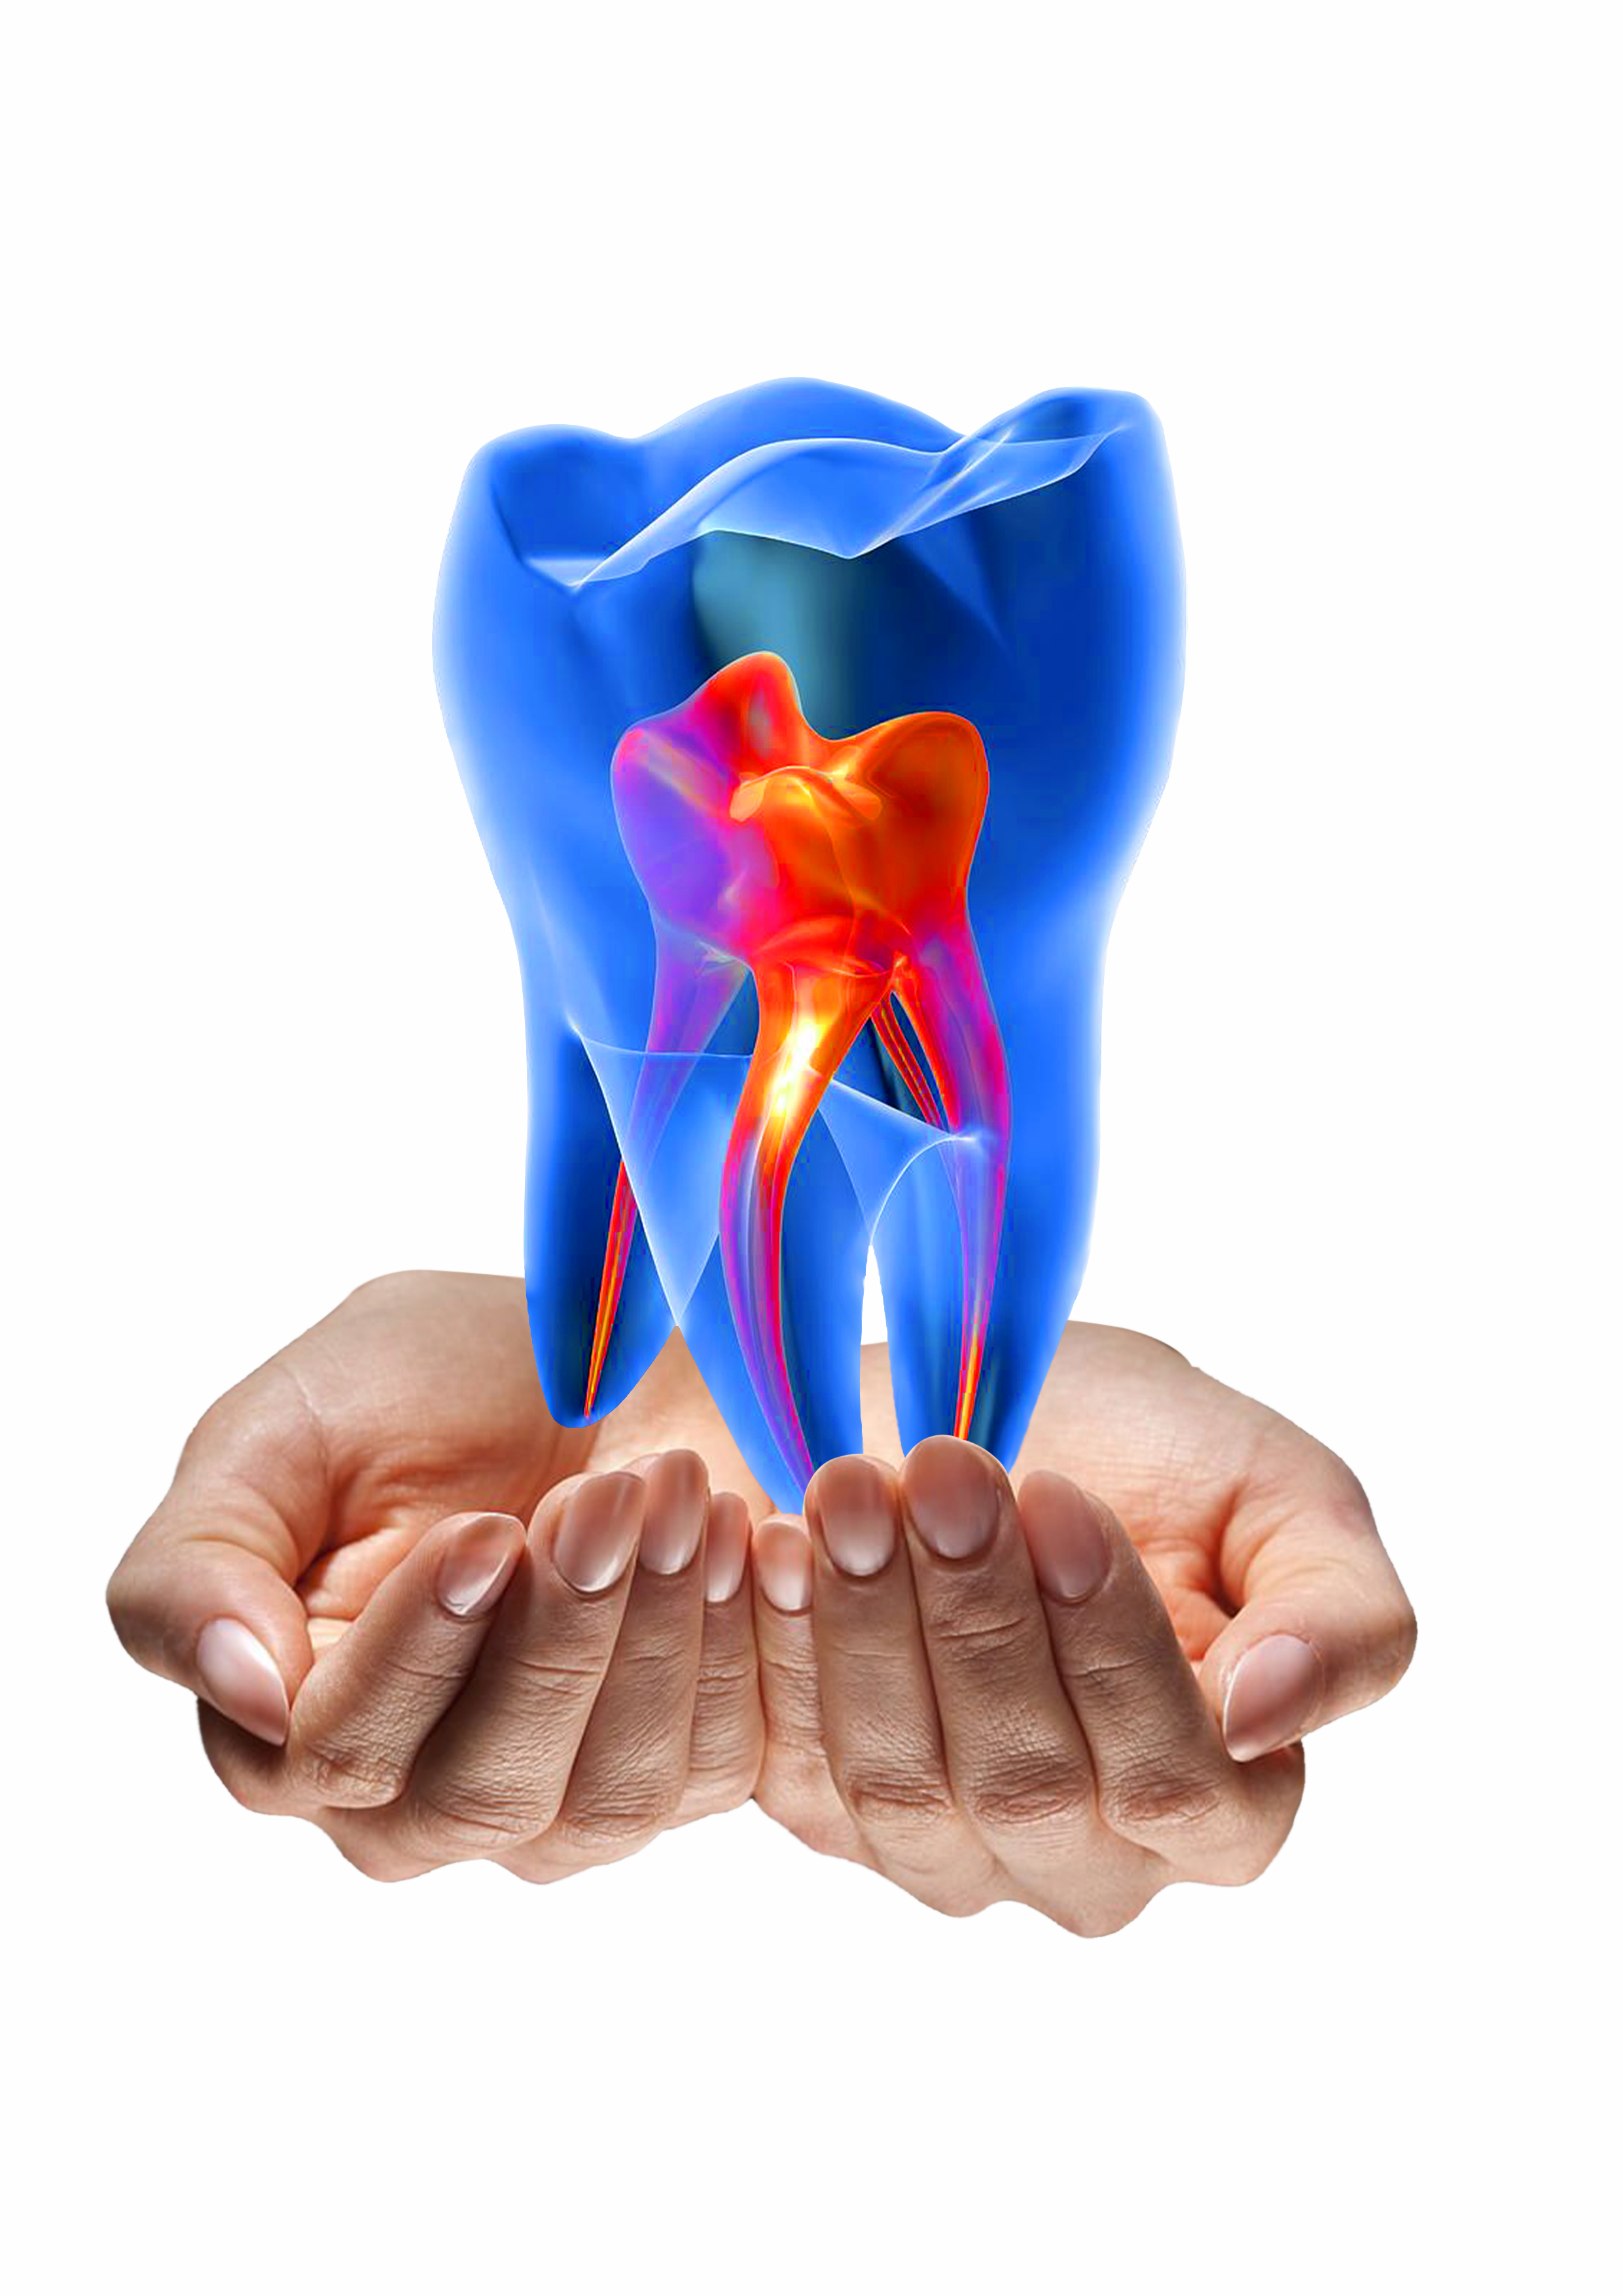 InArt Dental Studio|Clinics|Medical Services